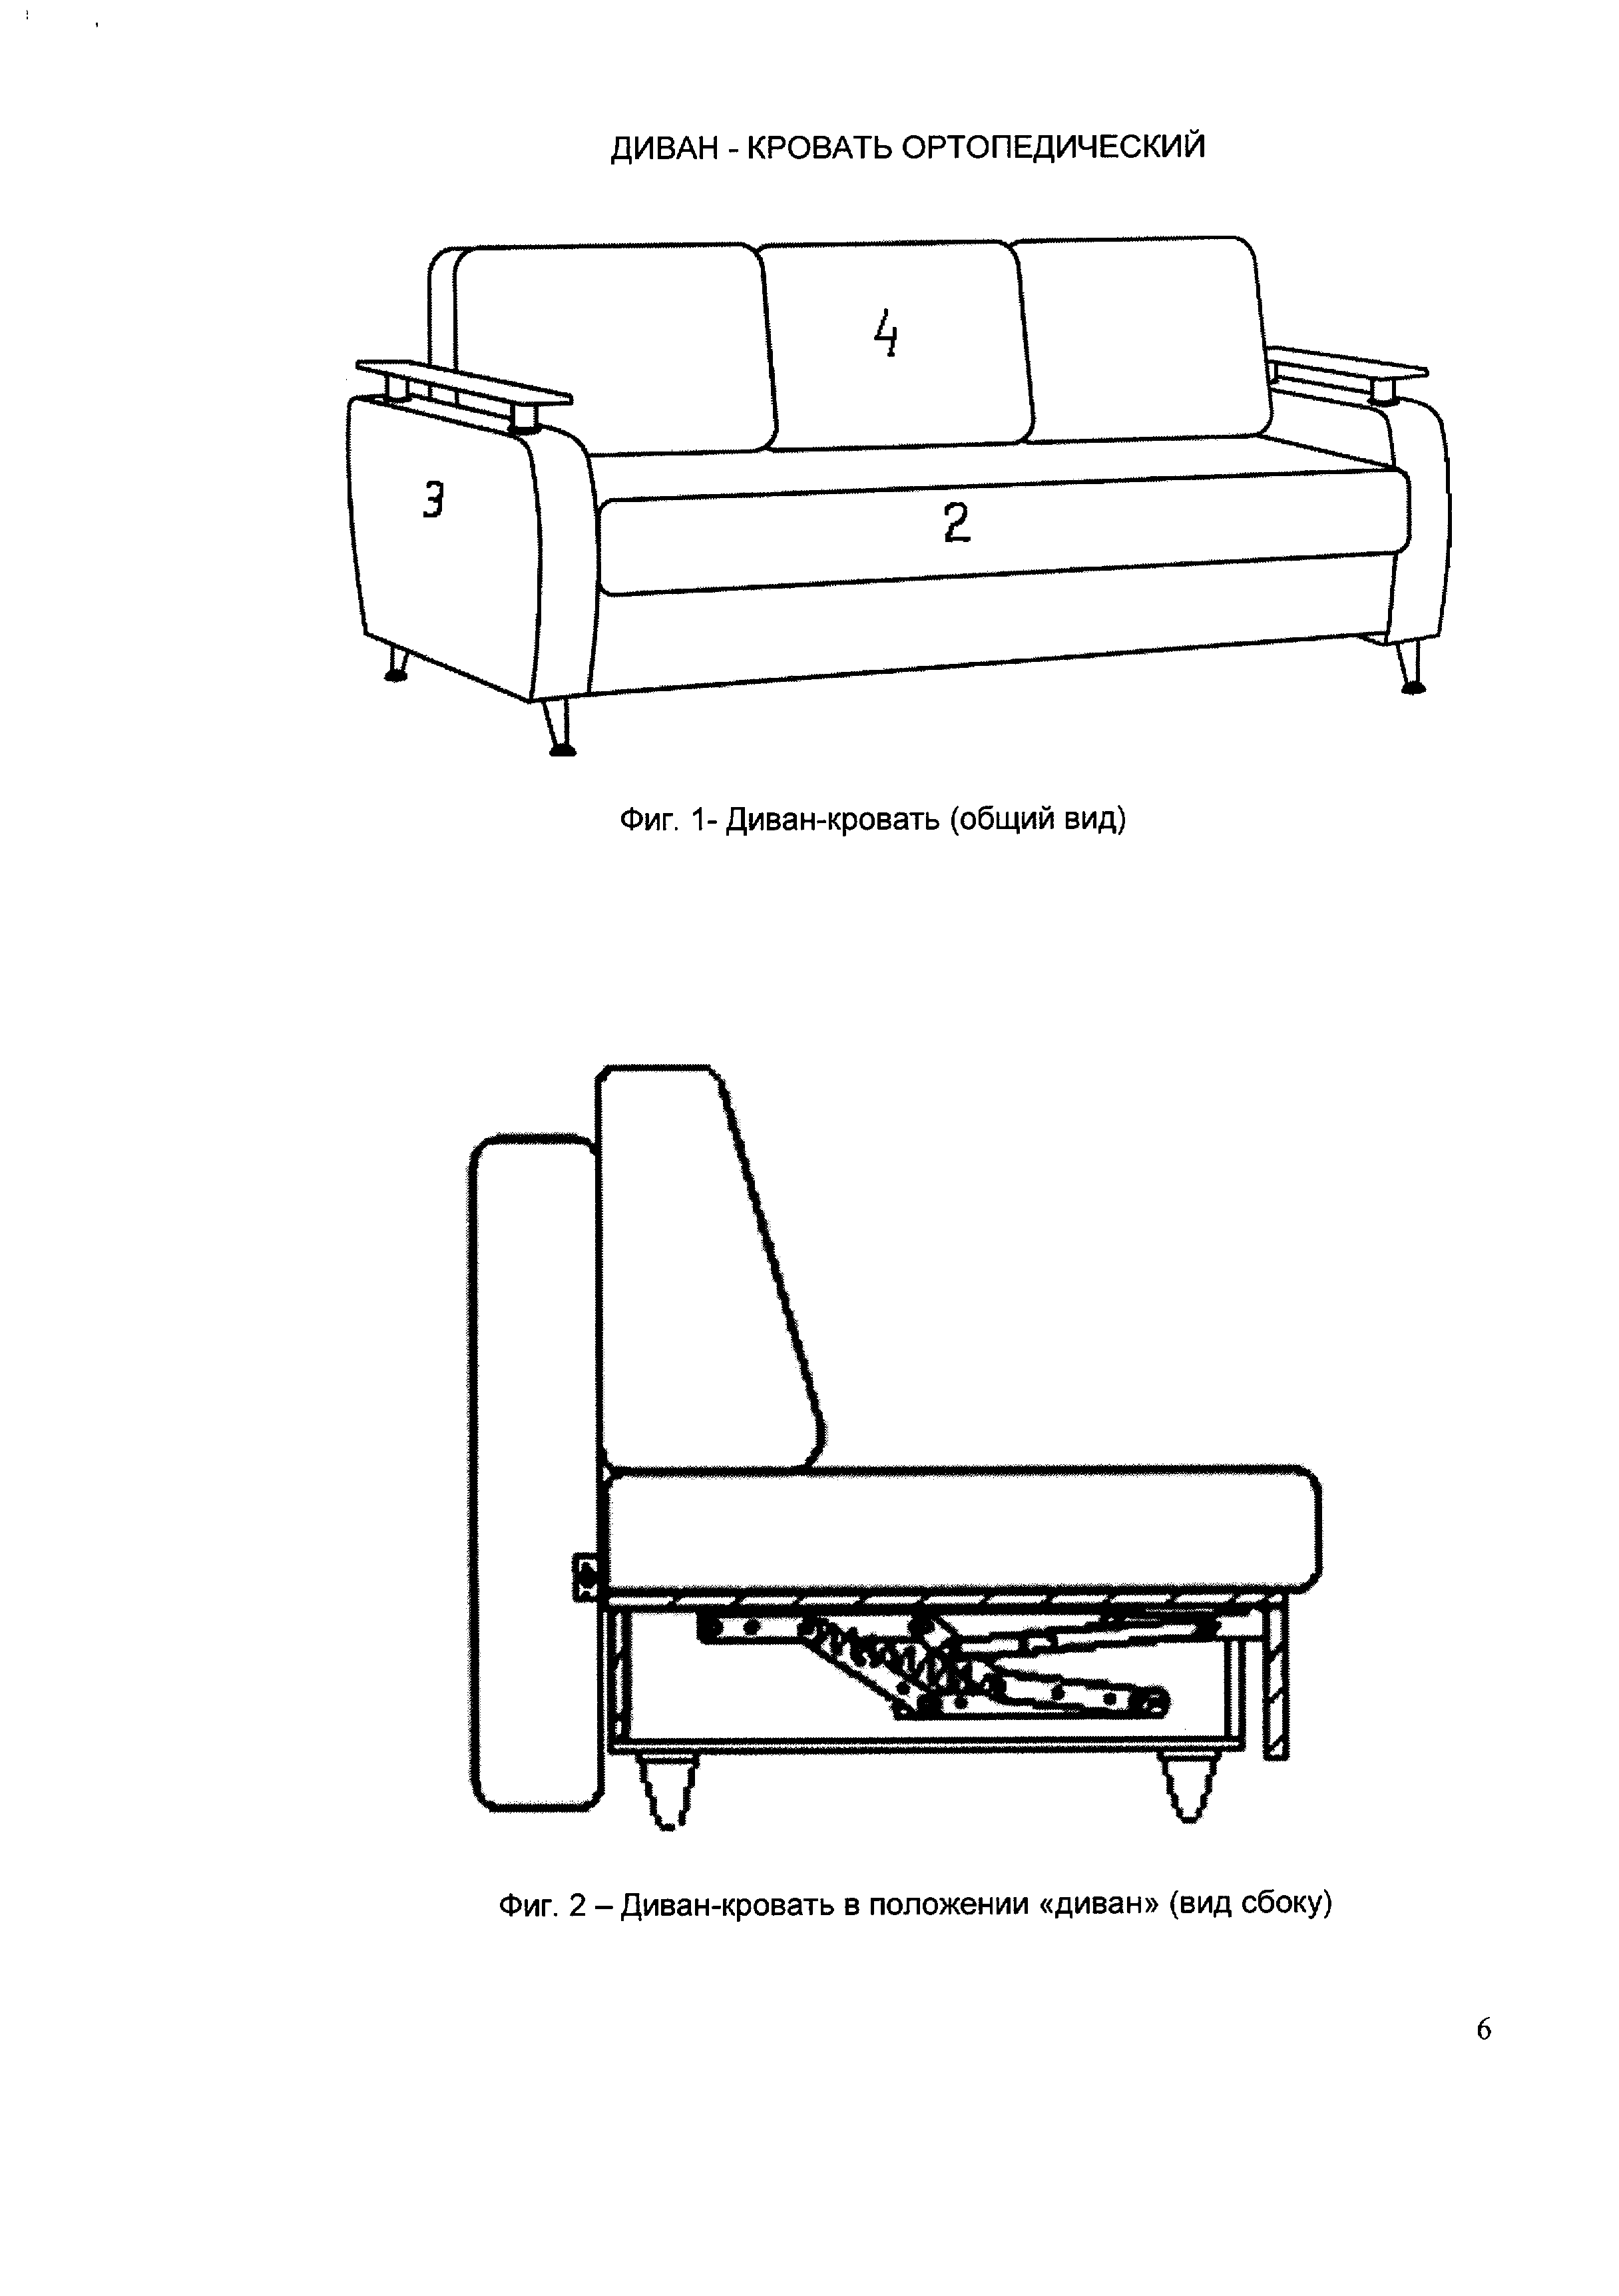 Состав дивана в разрезе